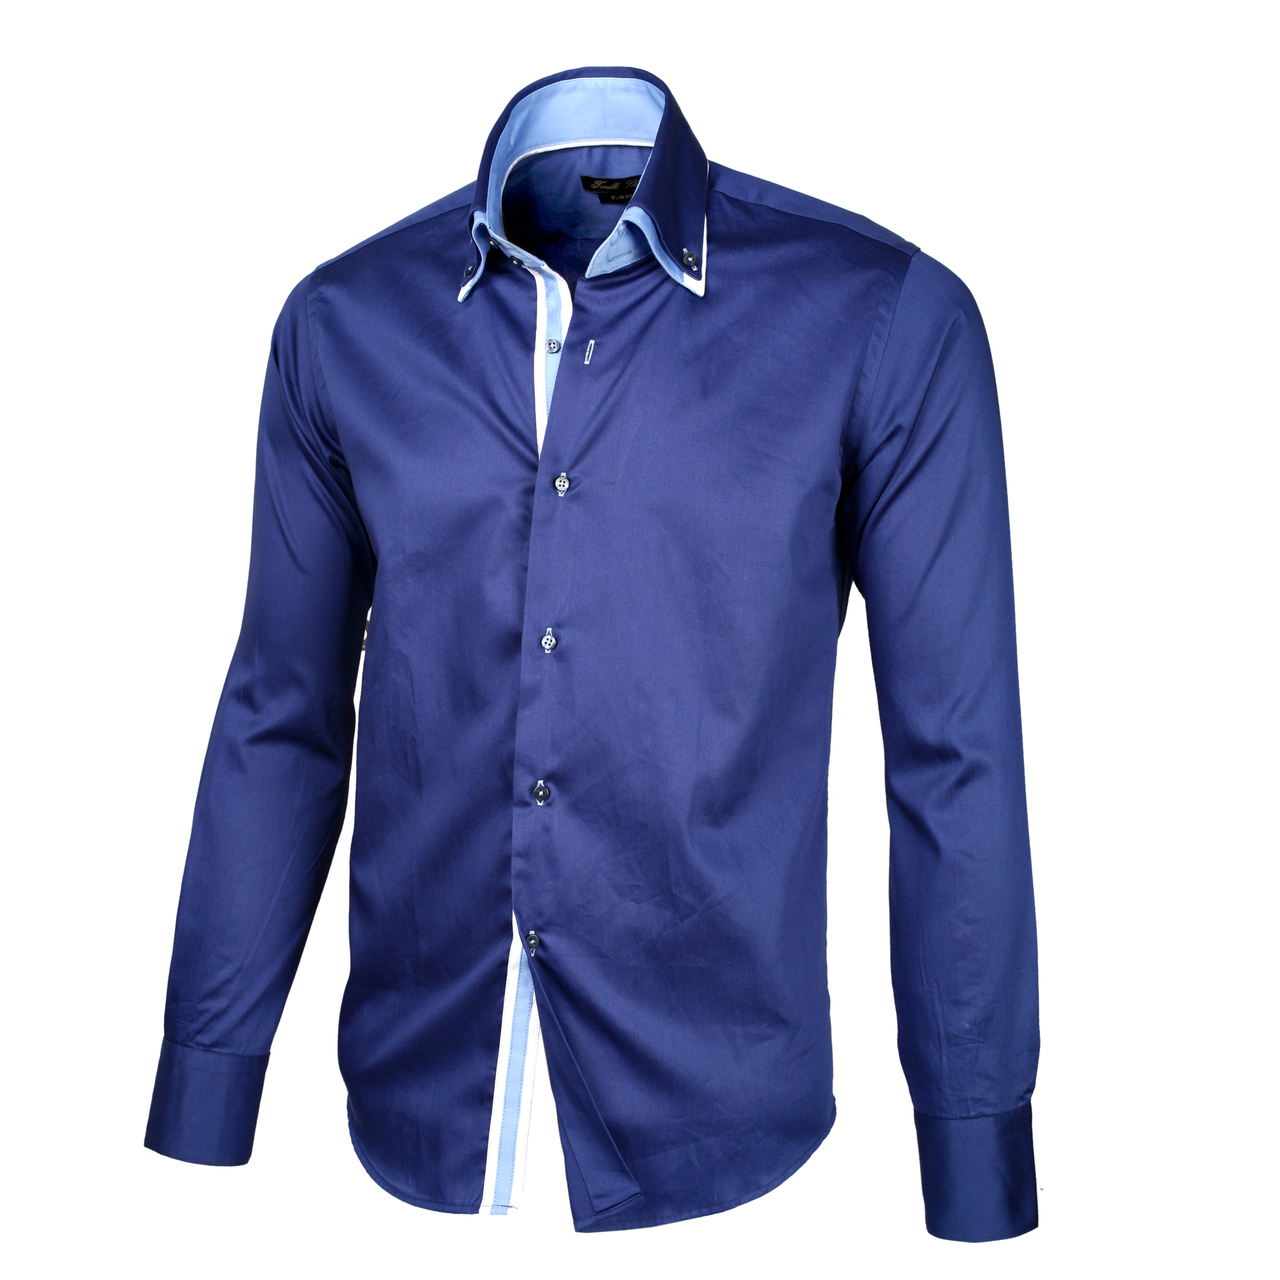 Недорогие мужские рубашки с длинным рукавом. Рубашка мужская Mavi m021190-80692. Синяя рубашка. Синяя рубашка мужская. Красивые рубашки для мужчин.